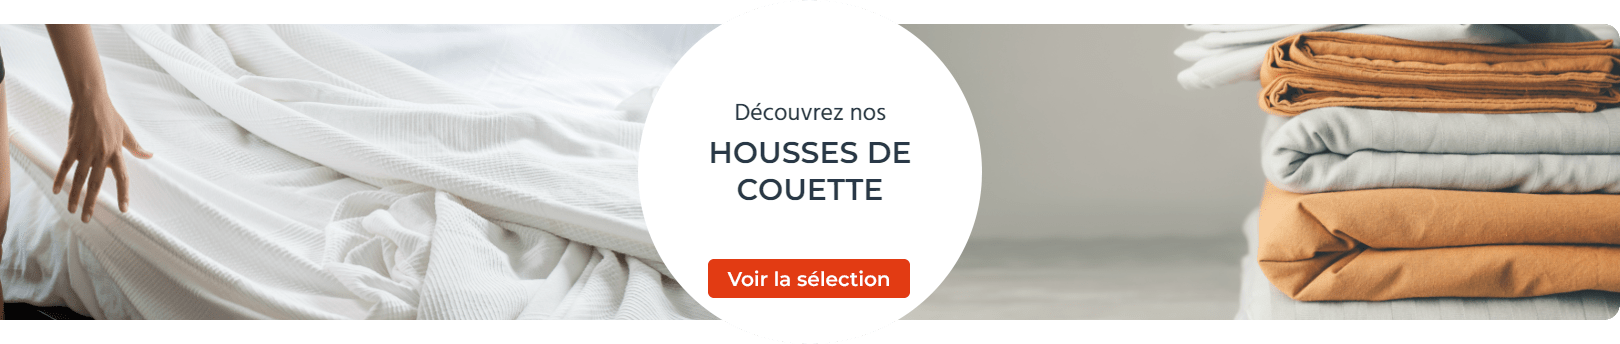 HOUSSE DE COUETTE